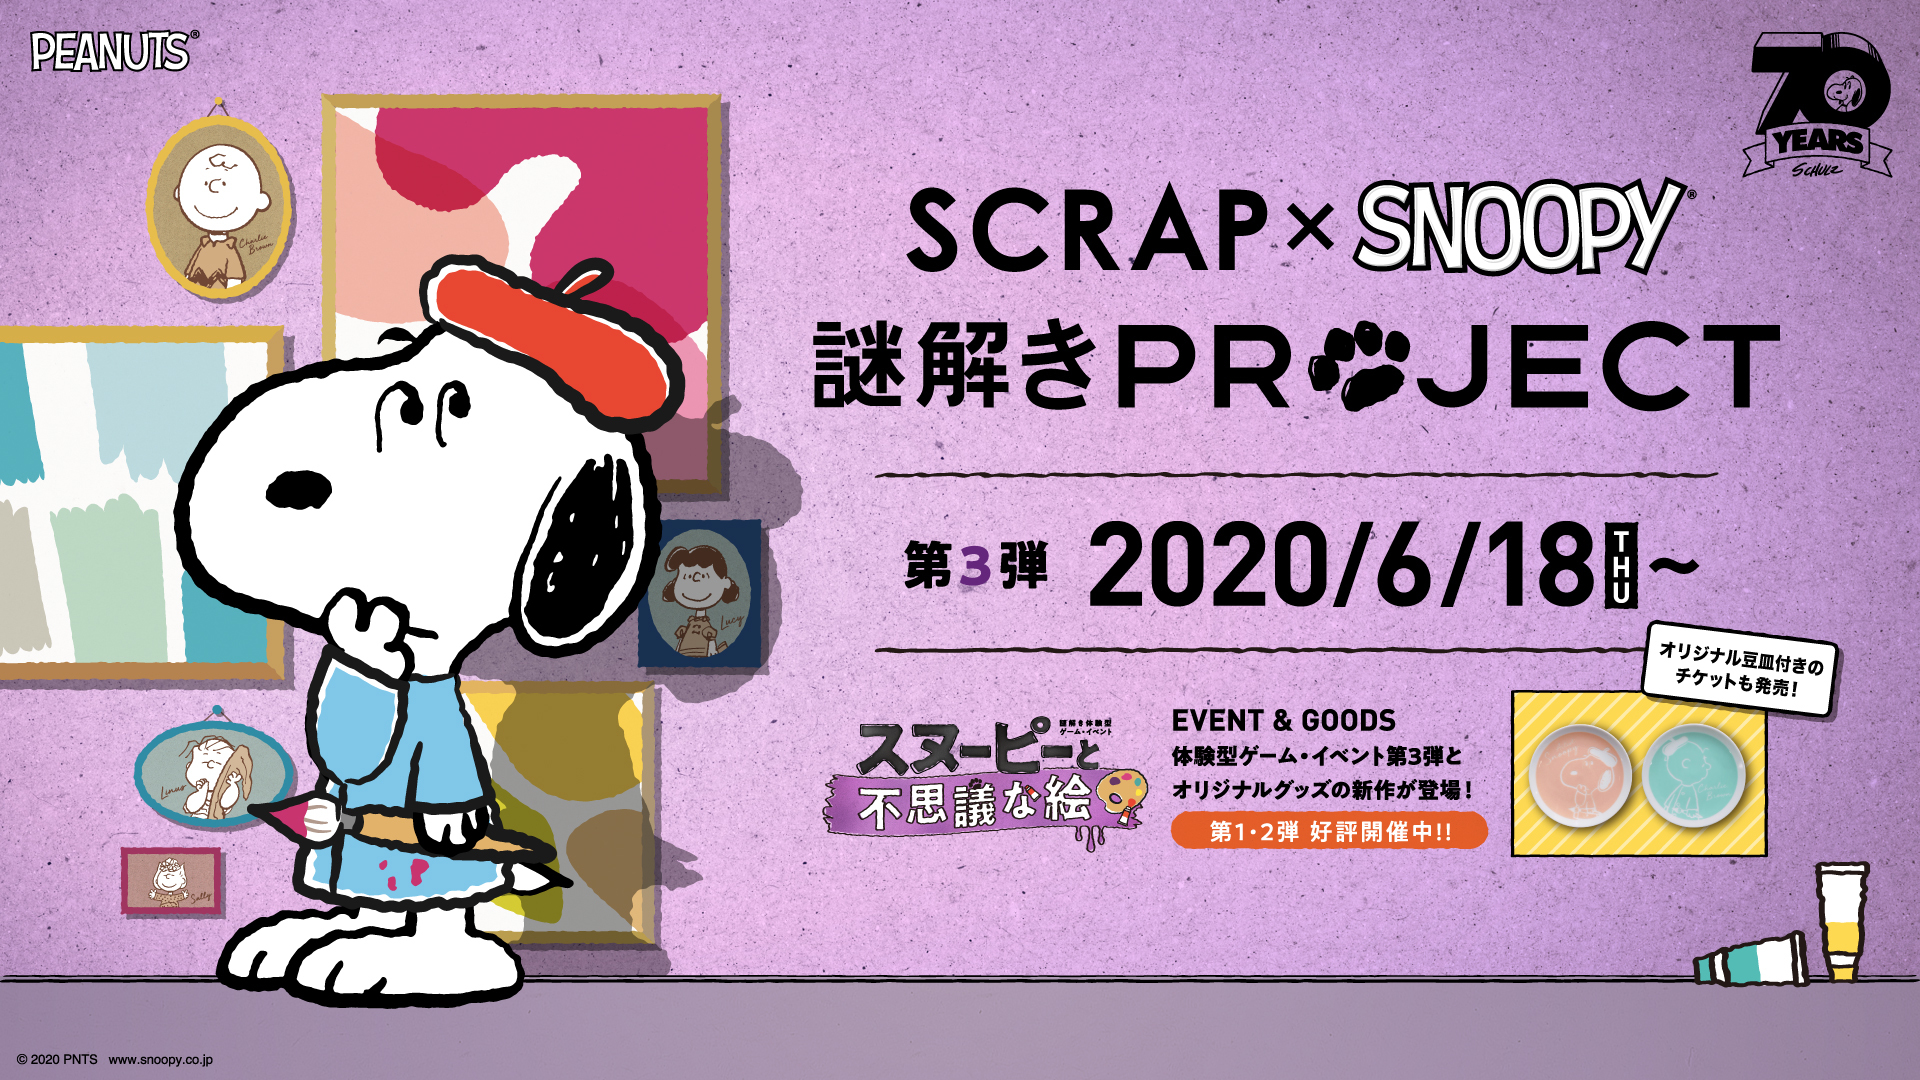 スヌーピーの美術館に仕掛けられた謎を解き明かせ Scrap Snoopy 謎解きproject 第3弾 スヌーピーと不思議な絵 開催決定 Spice エンタメ特化型情報メディア スパイス